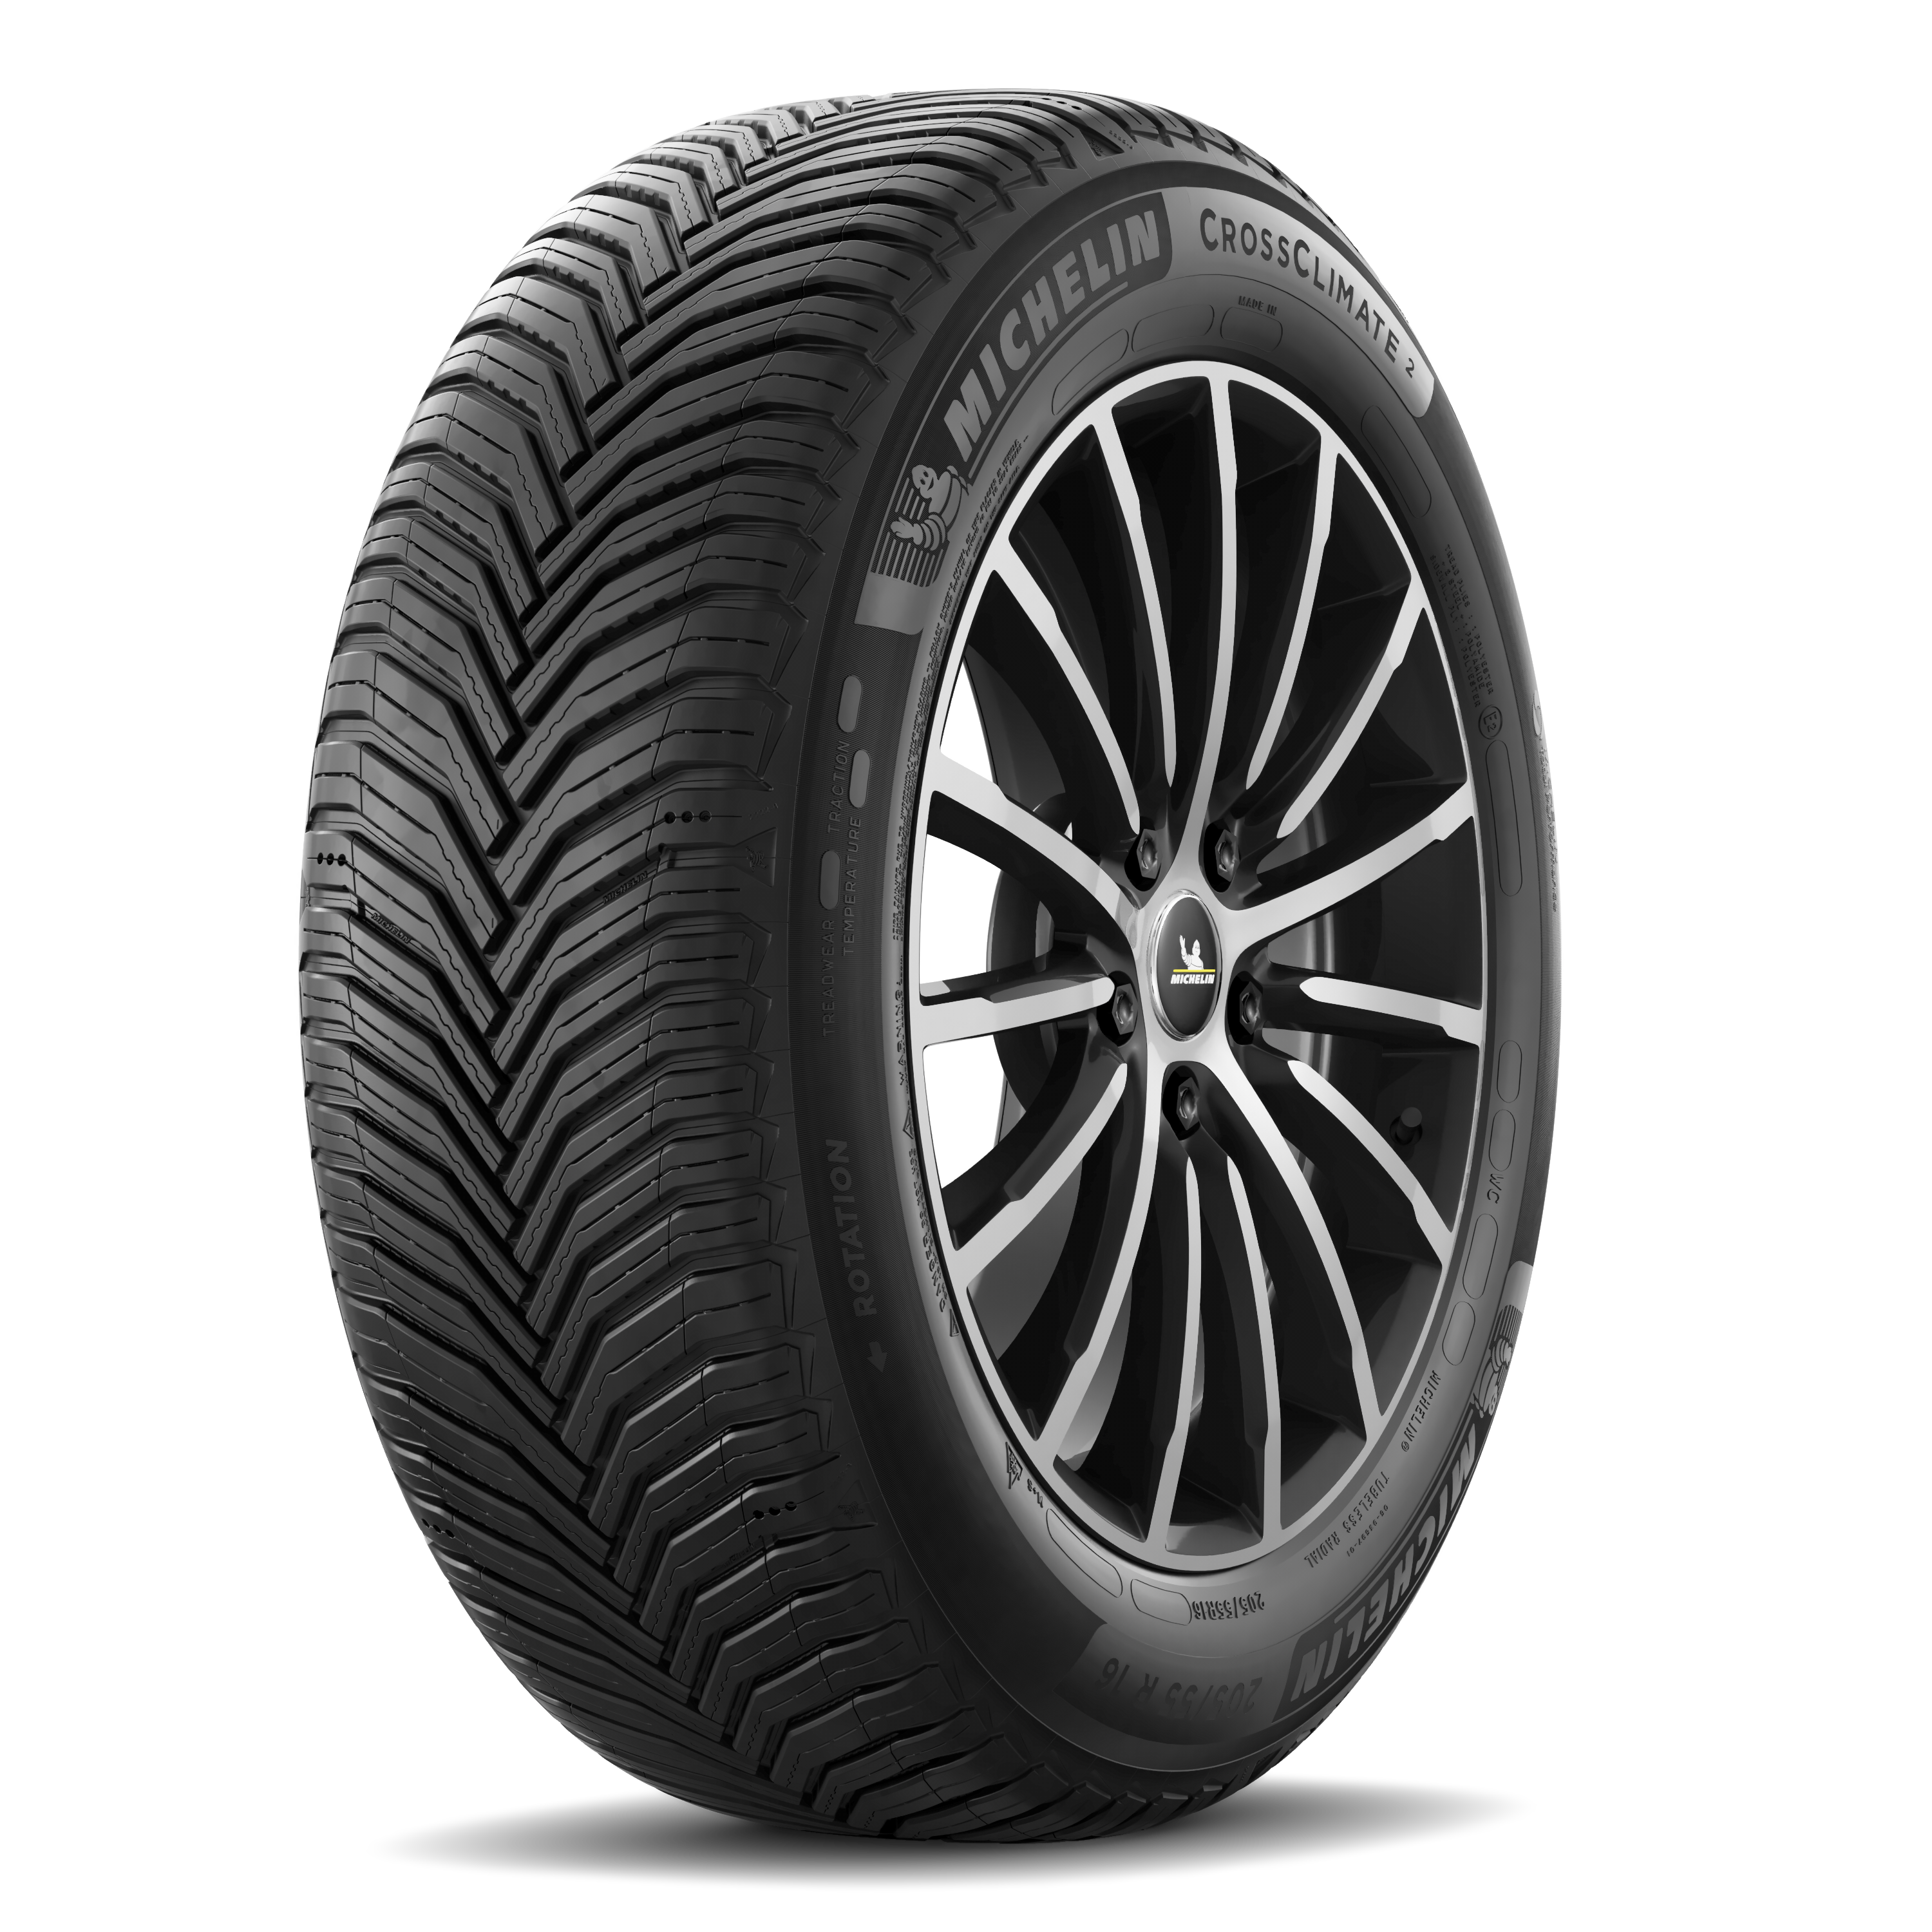 Gomme Nuove Michelin 215/55 R16 97V CROSSCLIMATE 2 M+S pneumatici nuovi All Season